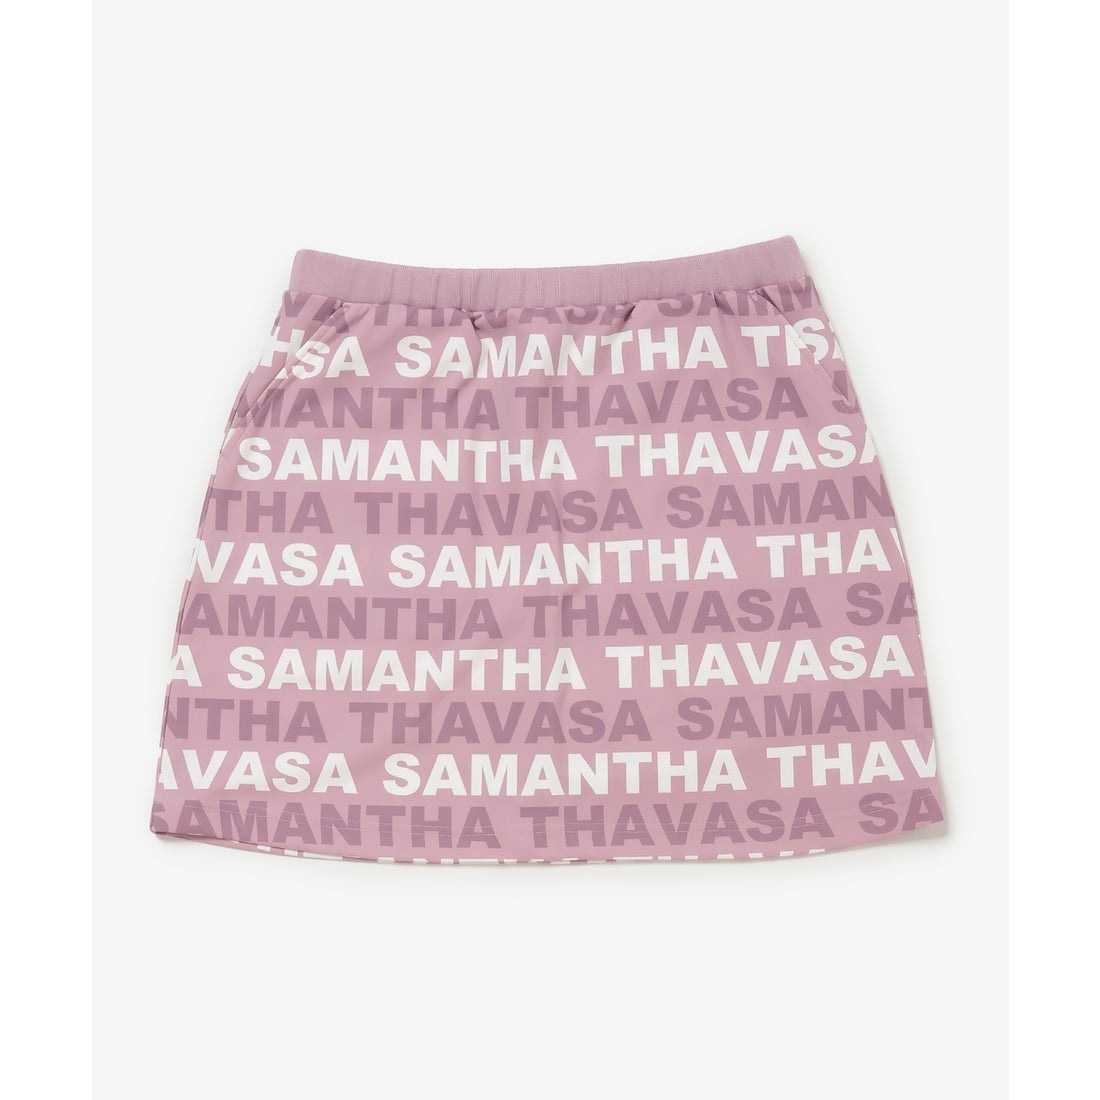 サマンサタバサアンダー25 ナンバー7 Samantha Thavasa UNDER25&NO.7 ボーダーロゴスカート (ピンク)